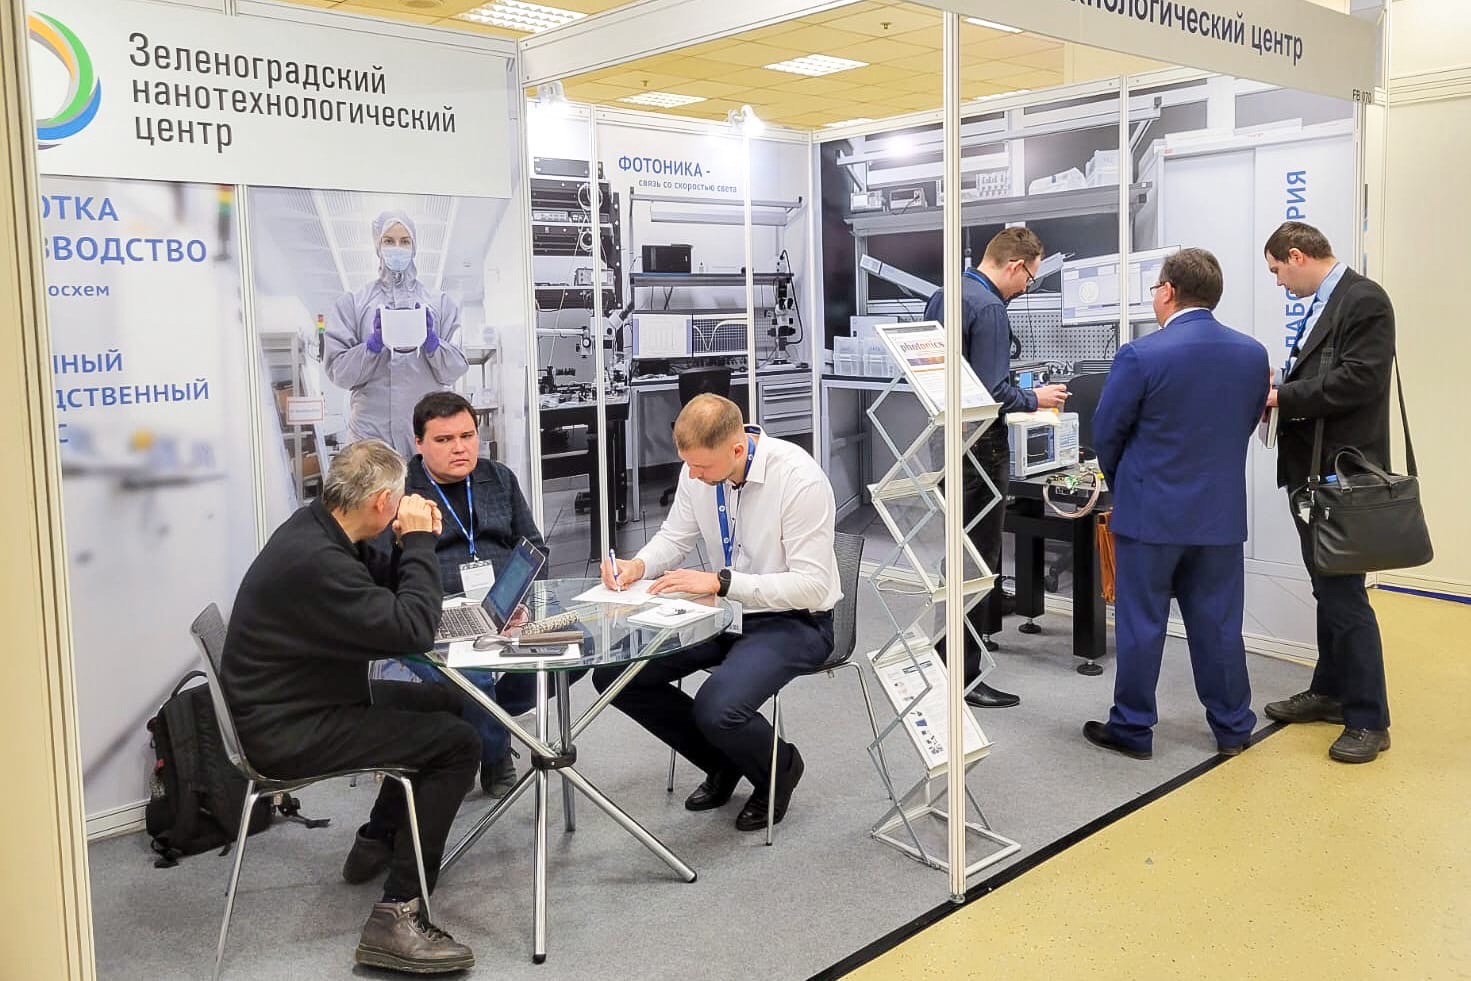 АО «ЗНТЦ» представил свои разработки на выставке «Фотоника» в Экспоцентре